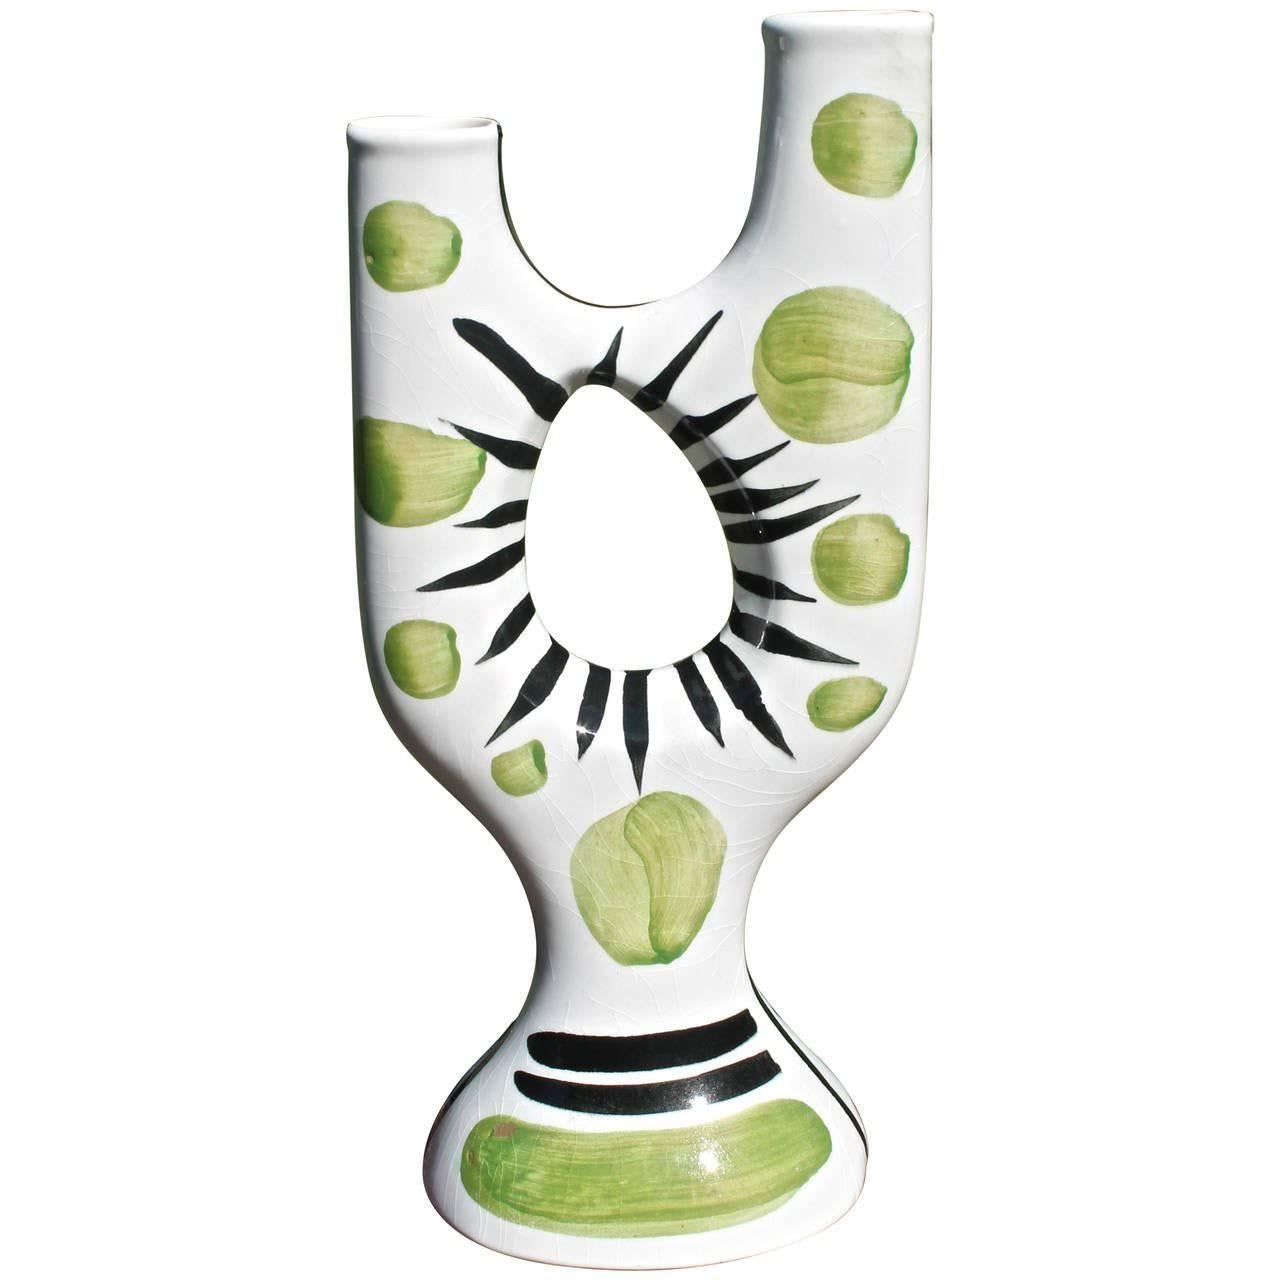 Atelier Revernay Midcentury Biomorphic Vase